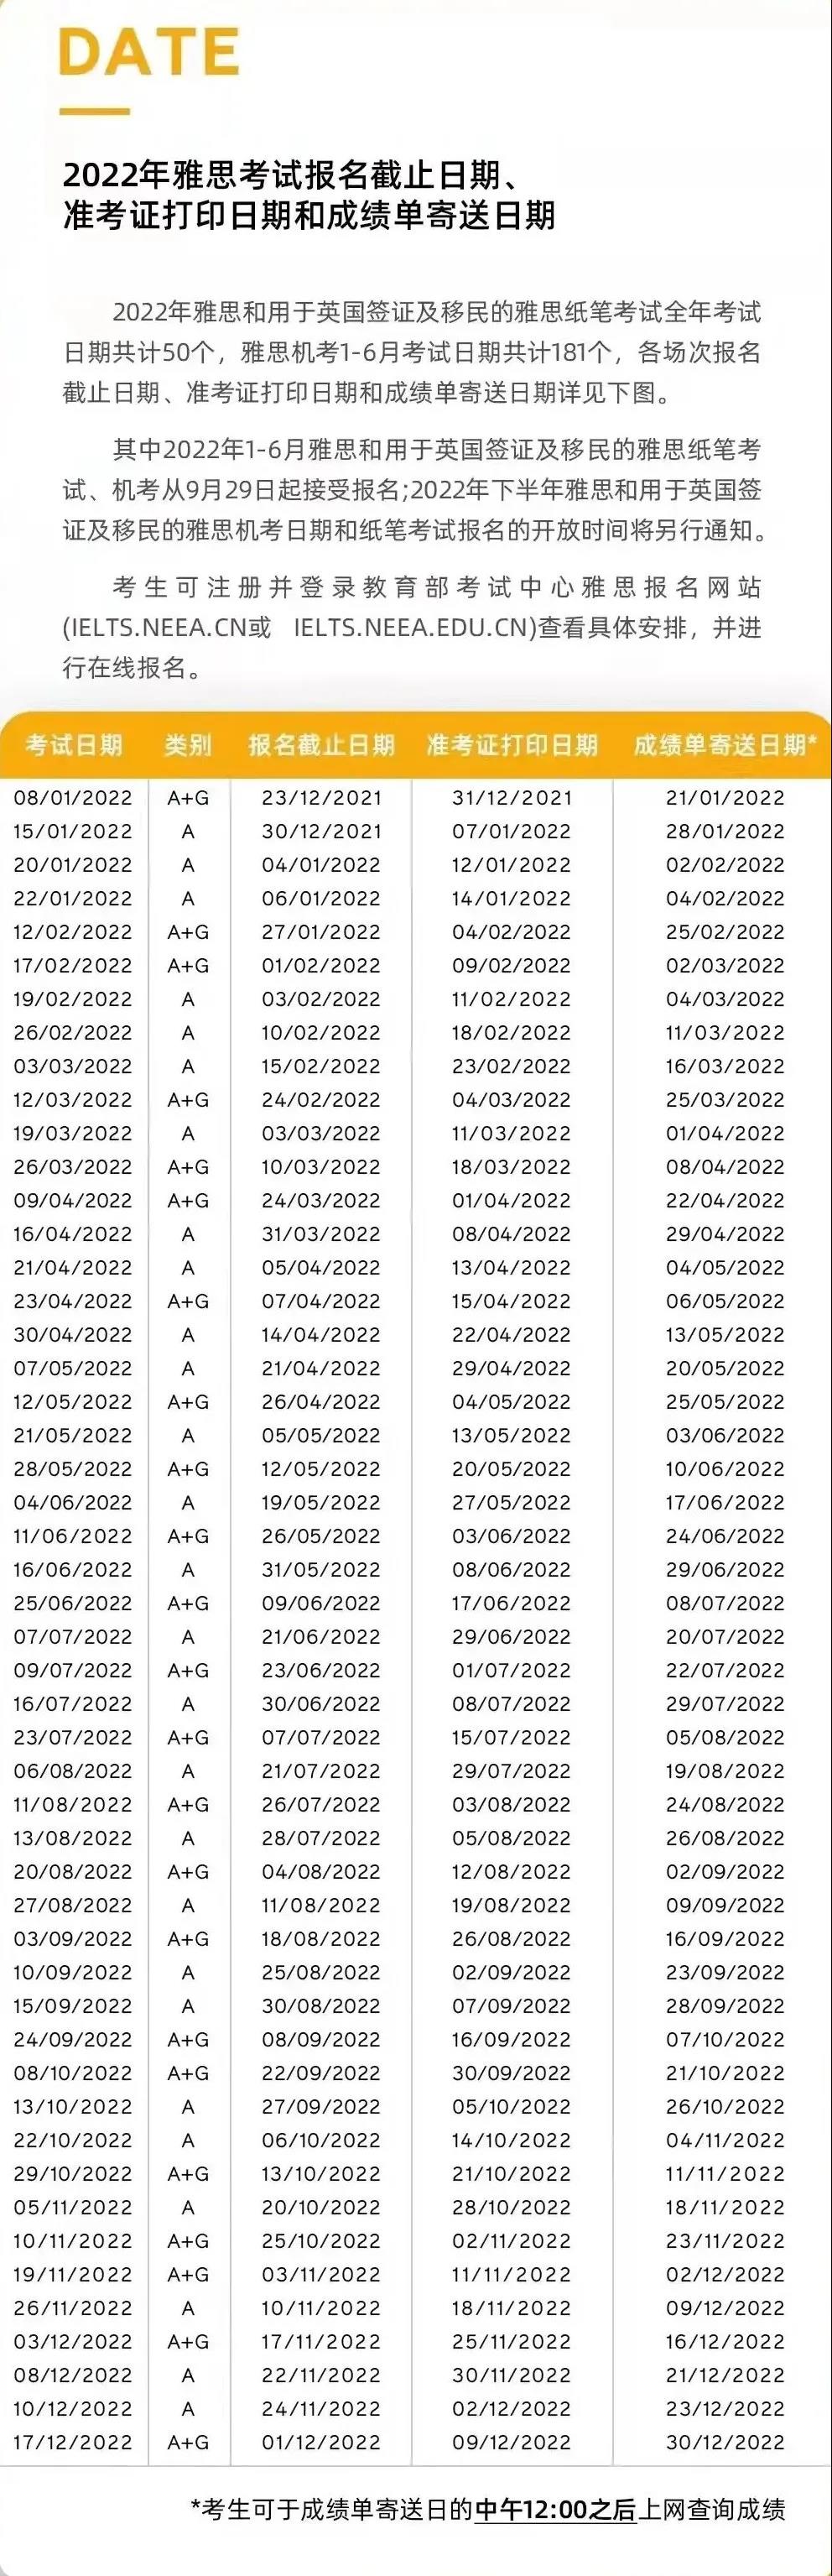 2022雅思考试报名截止日期、准考证打印日期和成绩单寄送日期